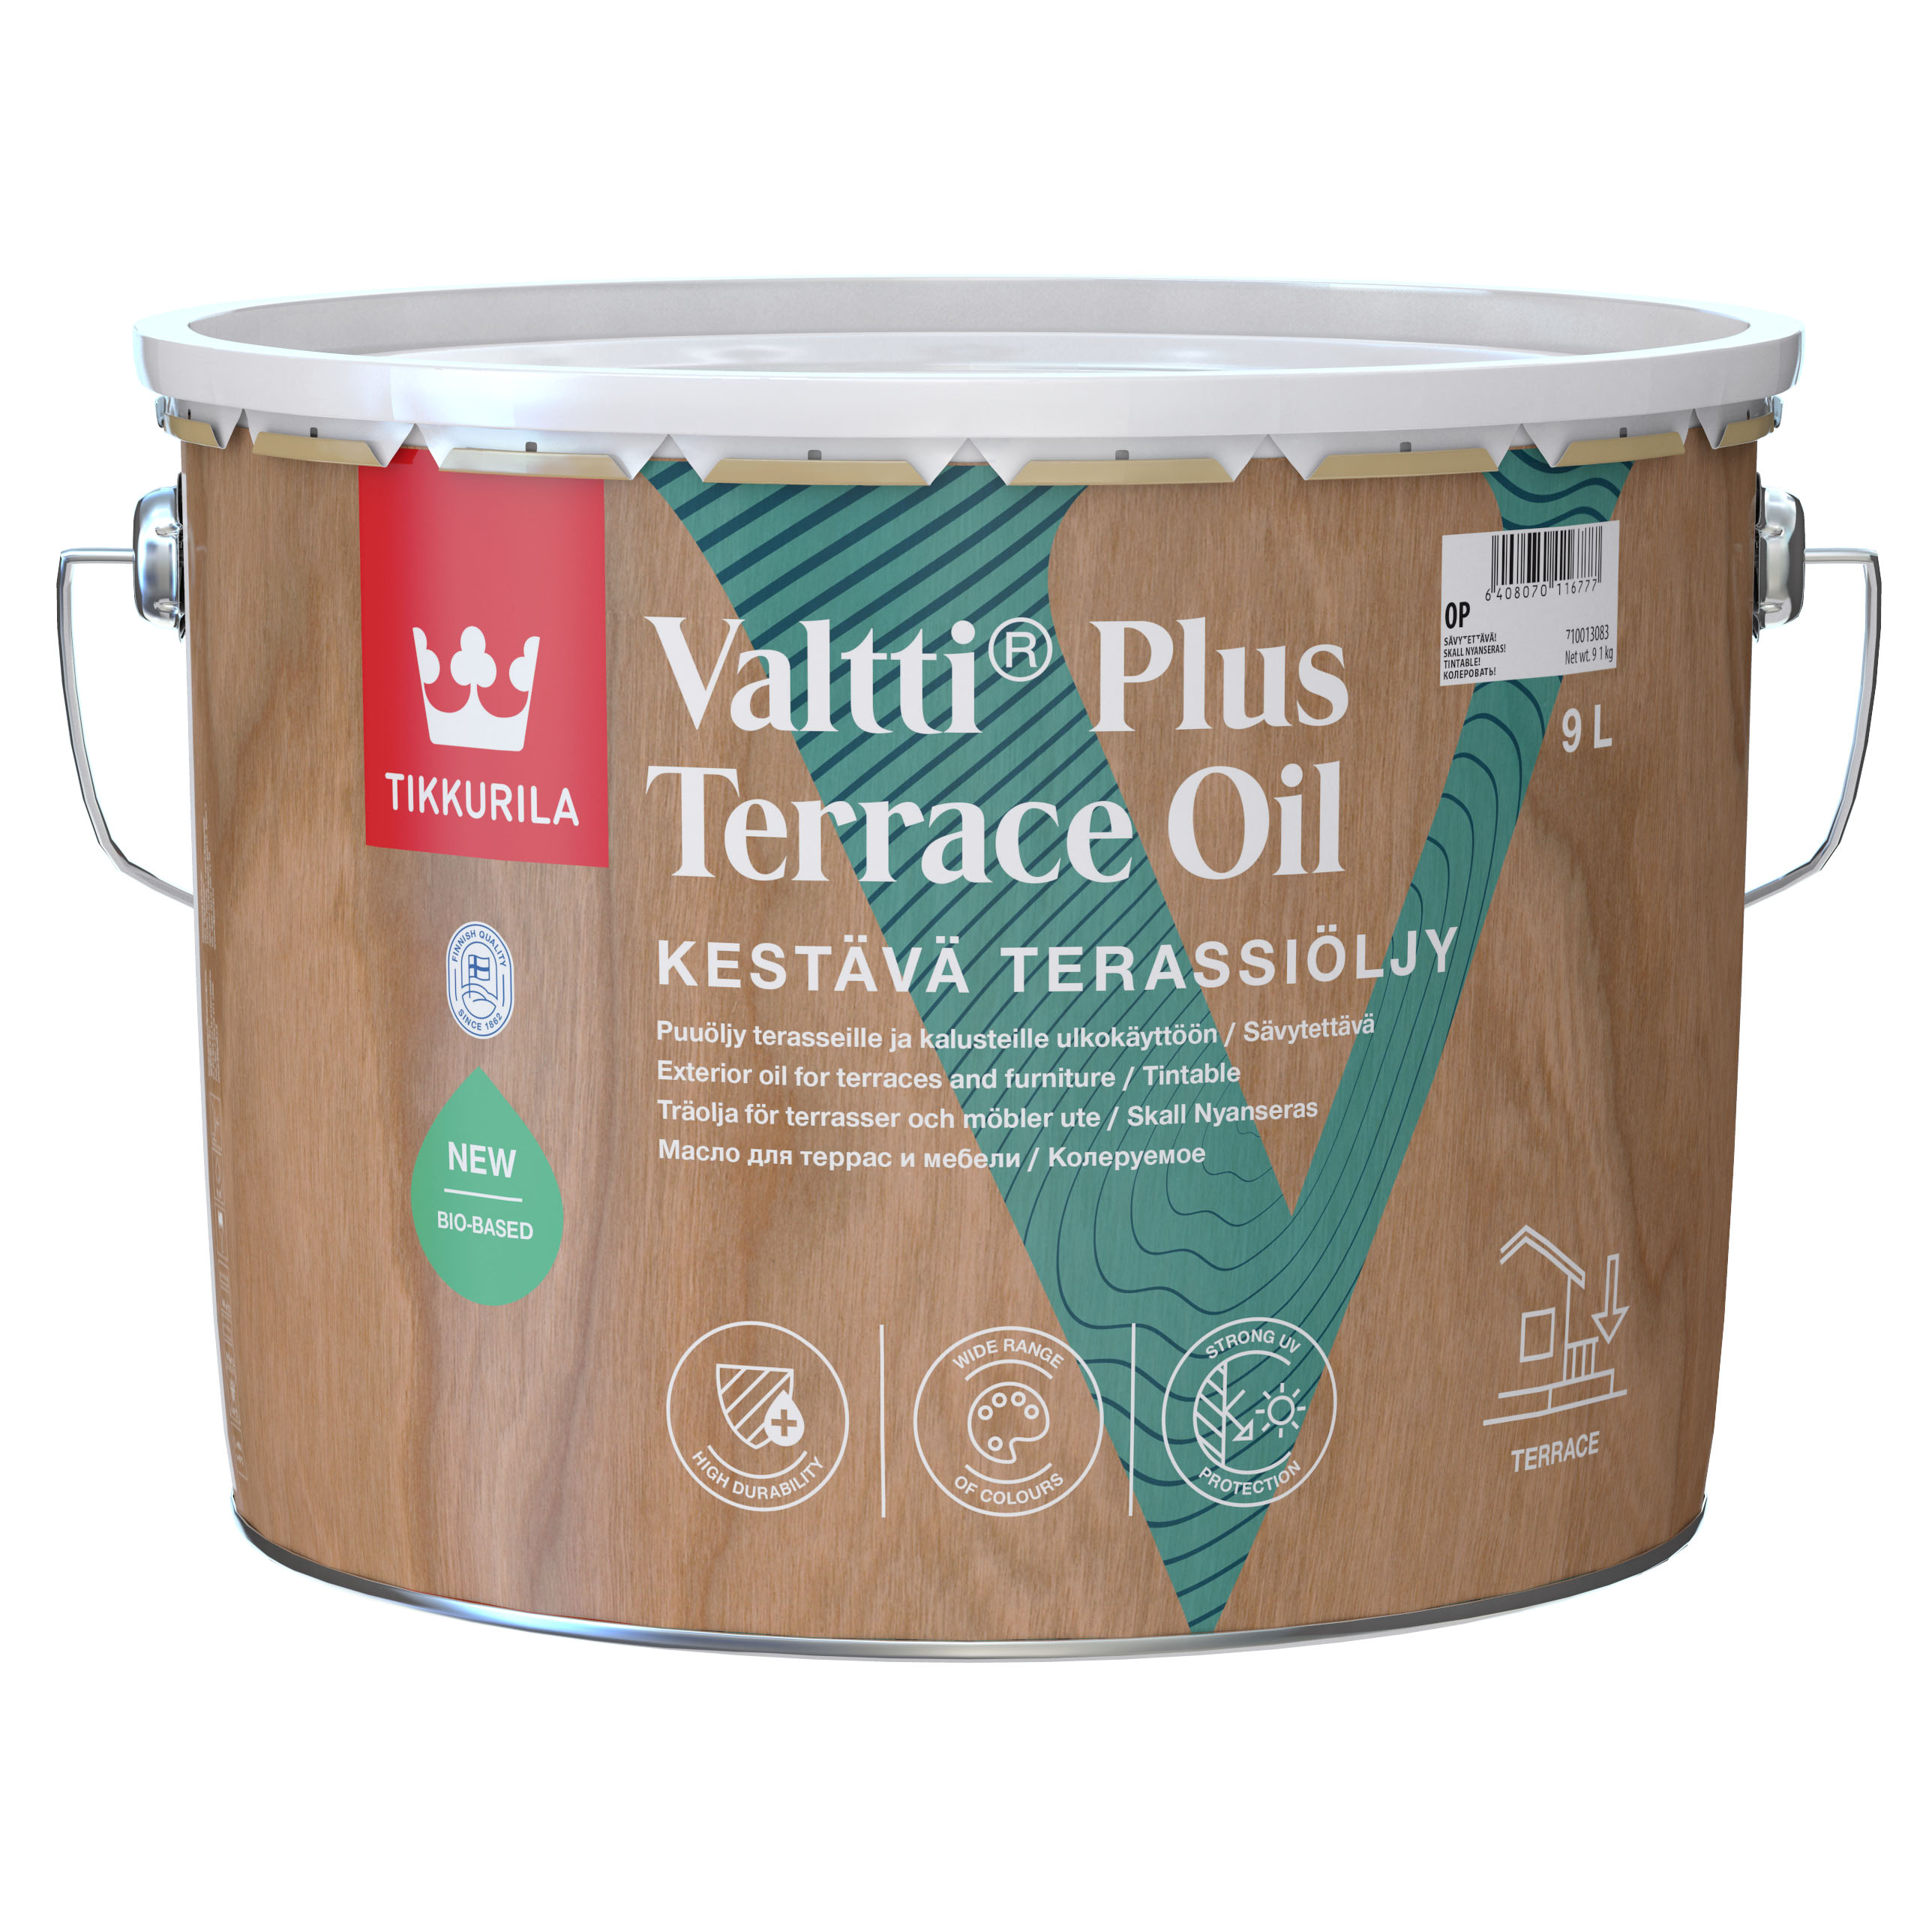 Valtti Terrace Plus Oil 9 л  OP